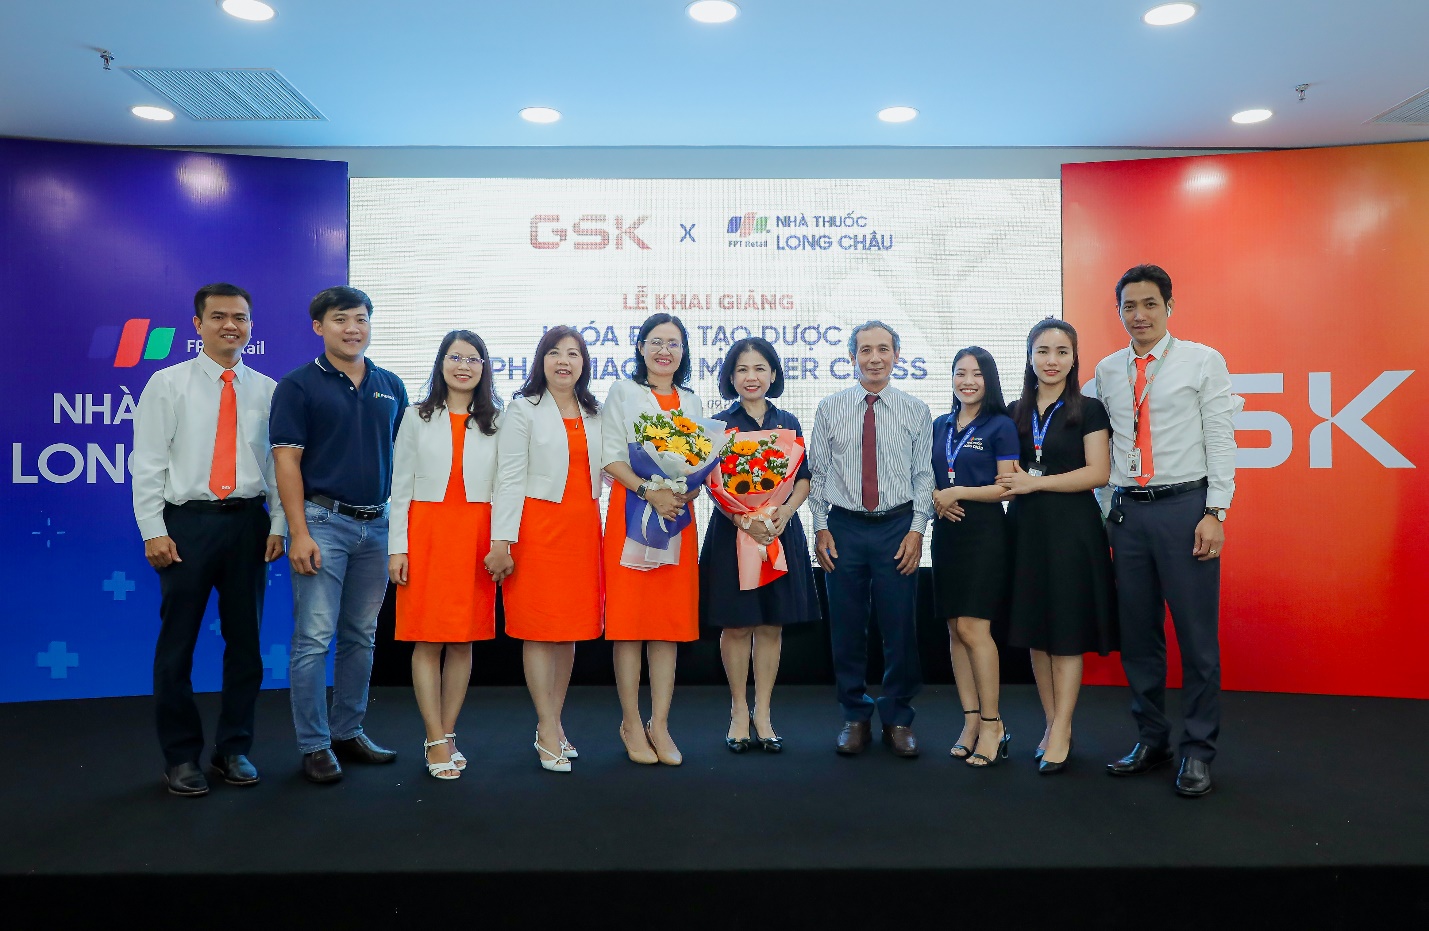 FPT Long Châu cùng GSK Việt Nam tổ chức khóa đào tạo dược sĩ “Pharmacist Master Class” tiên phong tại Việt Nam - Ảnh 4.